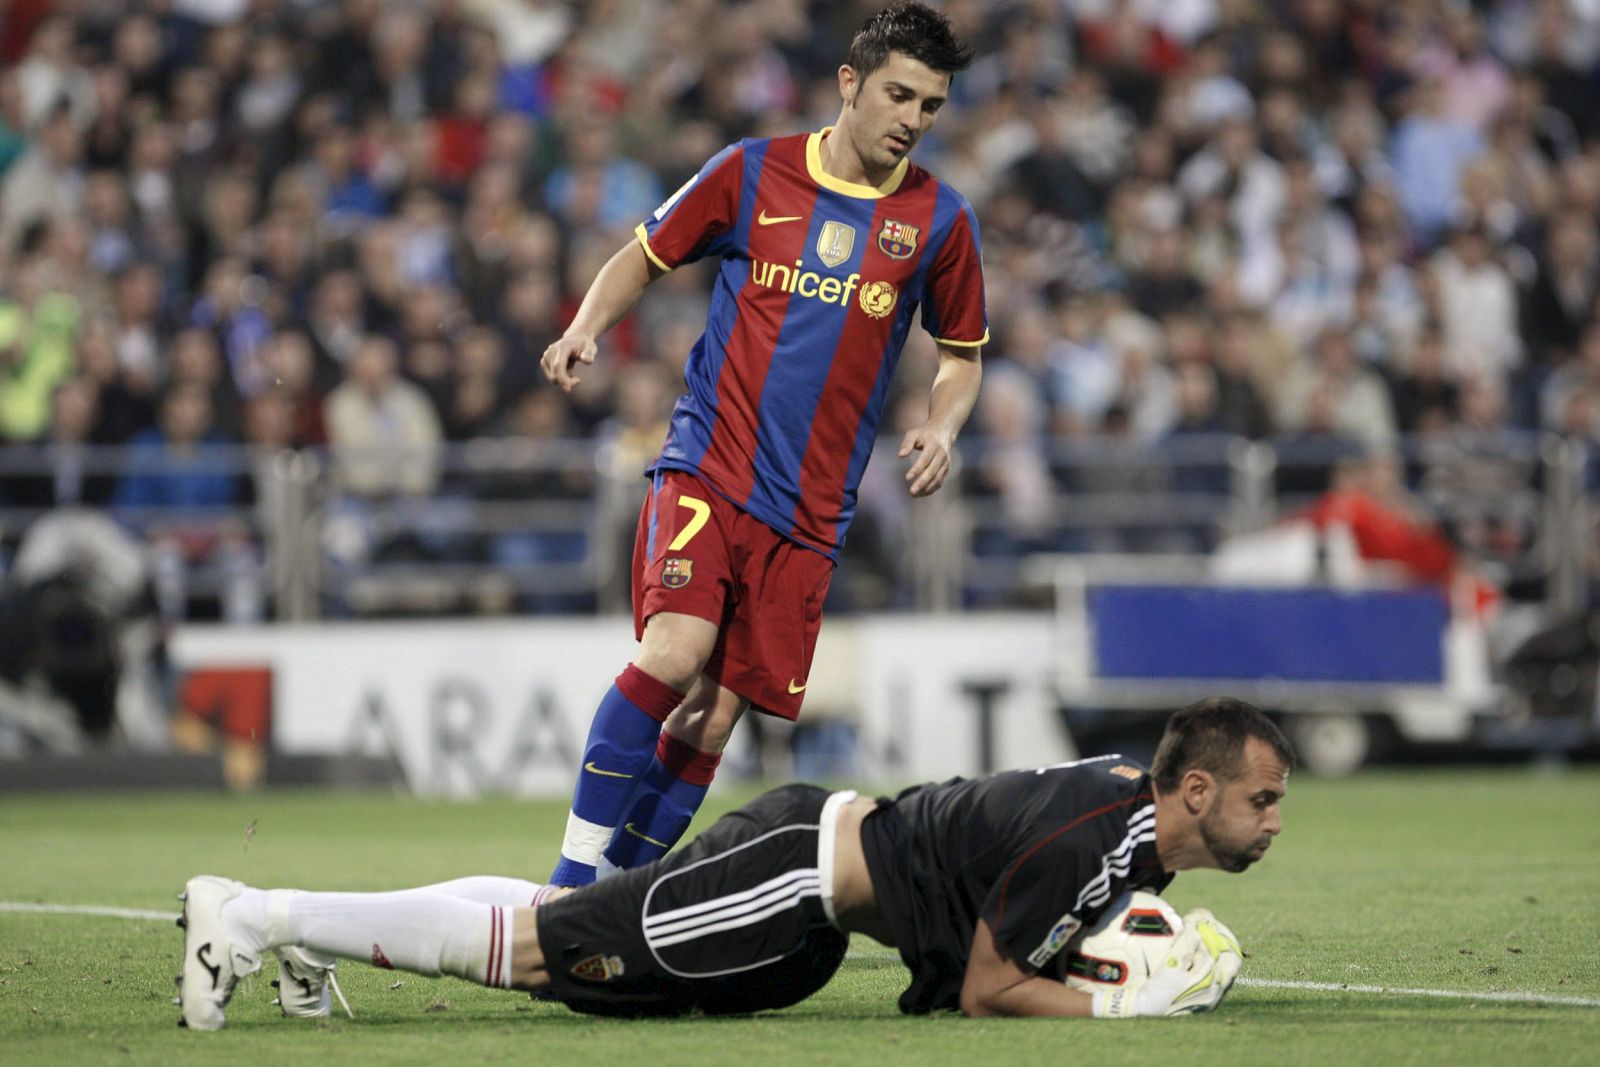 El portero del Zaragoza, Doblas, detiene el balón junto al delantero del Barcelona, David Villa.